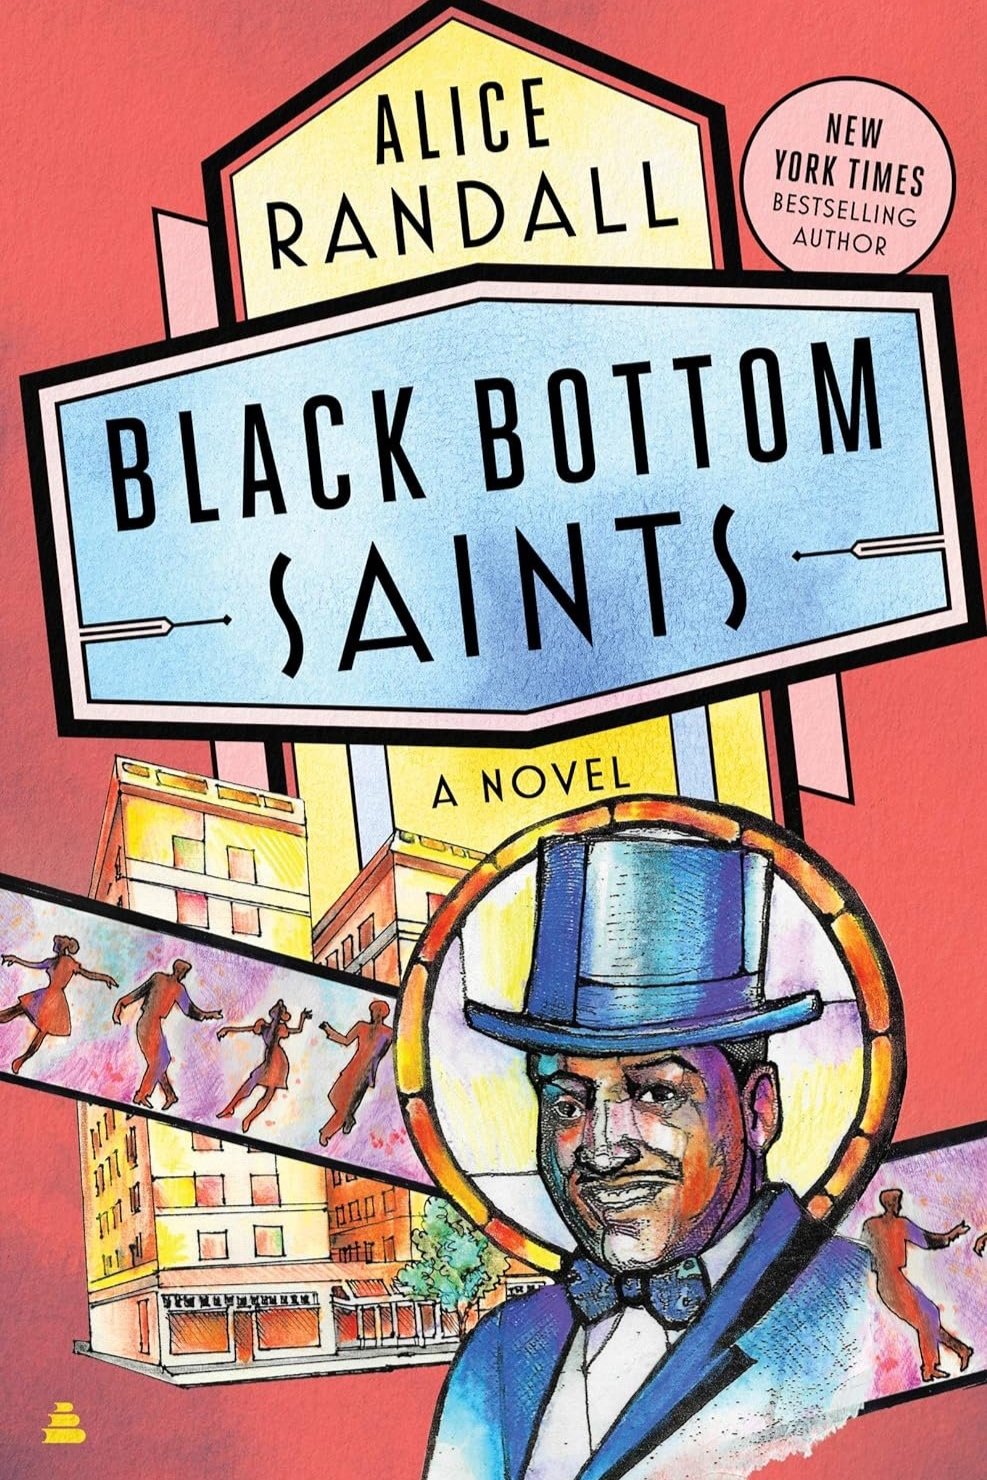 Black+Bottom+Saints+Randall+Cover.jpg